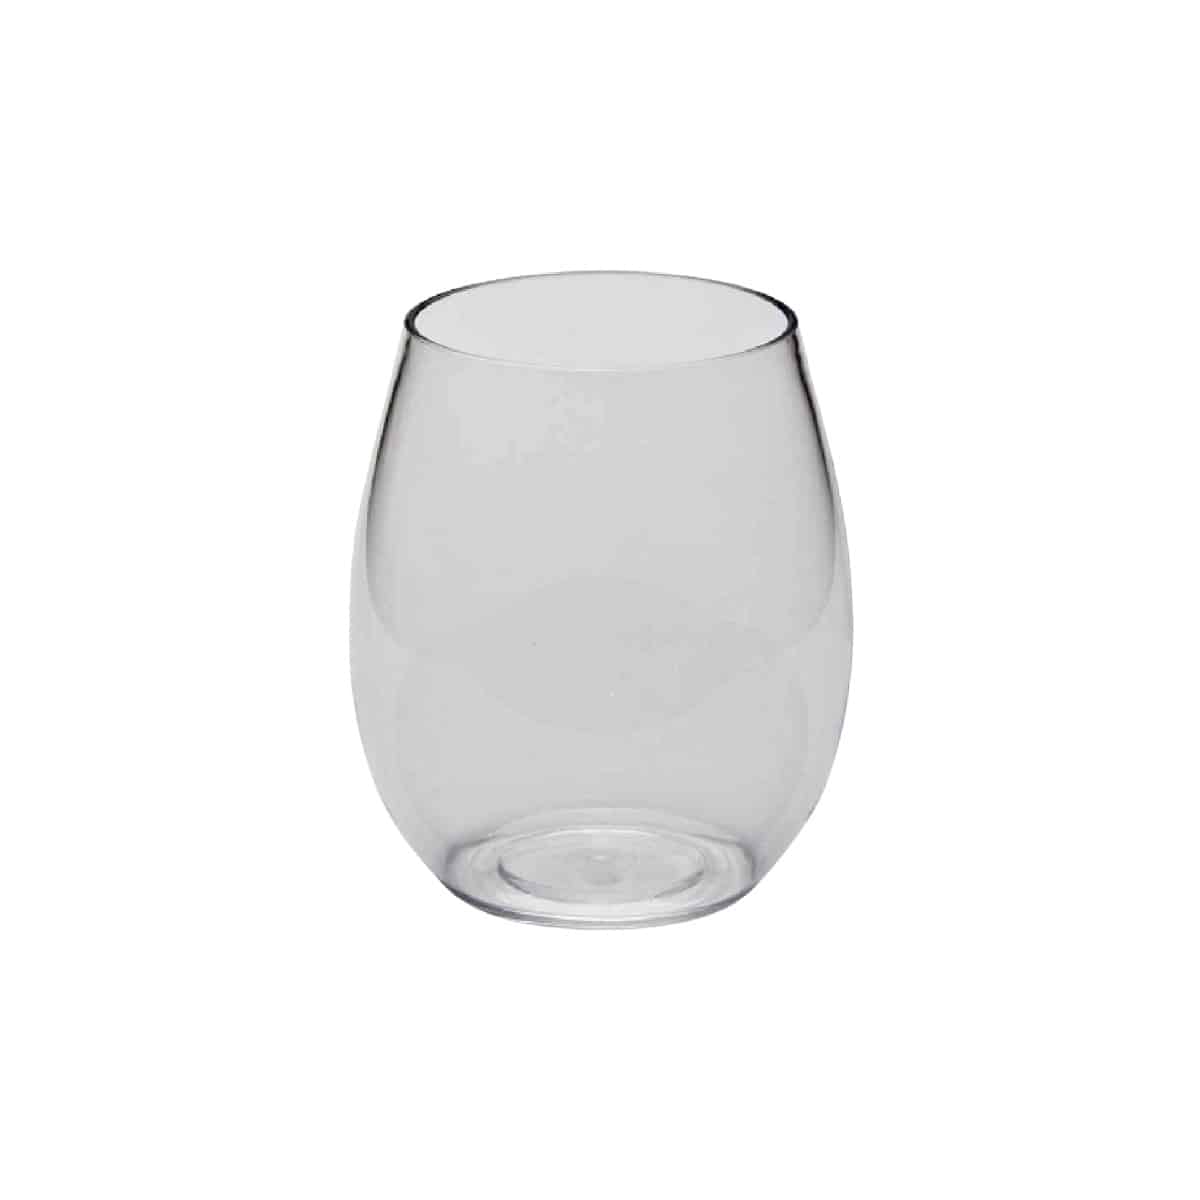 Bicchieri-acqua-in-Tritan-trasparente-da-390-cc-6-pz